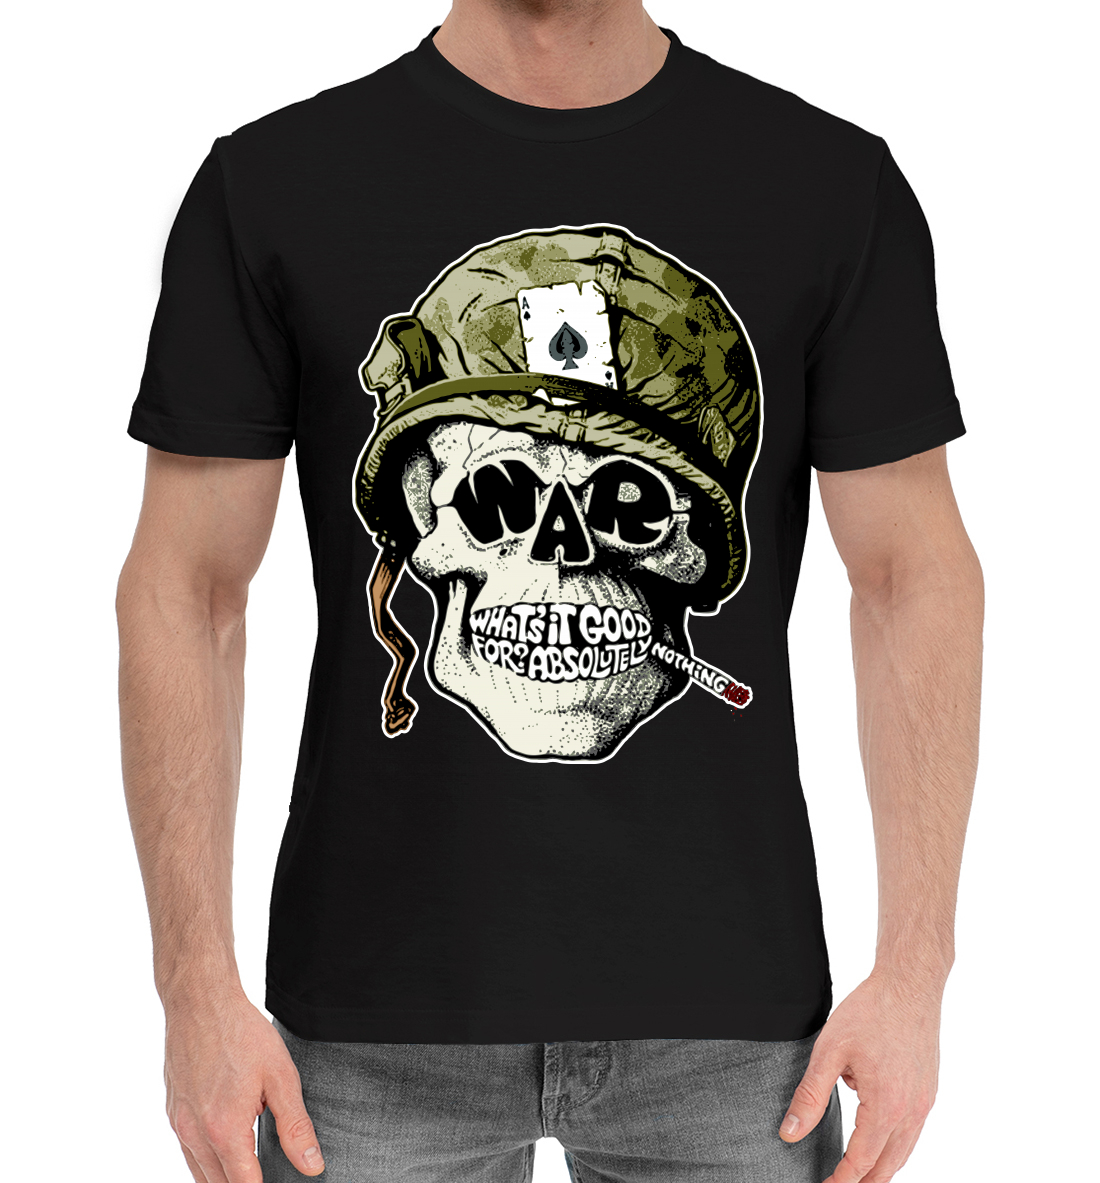 Мужская Хлопковая футболка с принтом Война, артикул SKU-104901-hfu-2mp